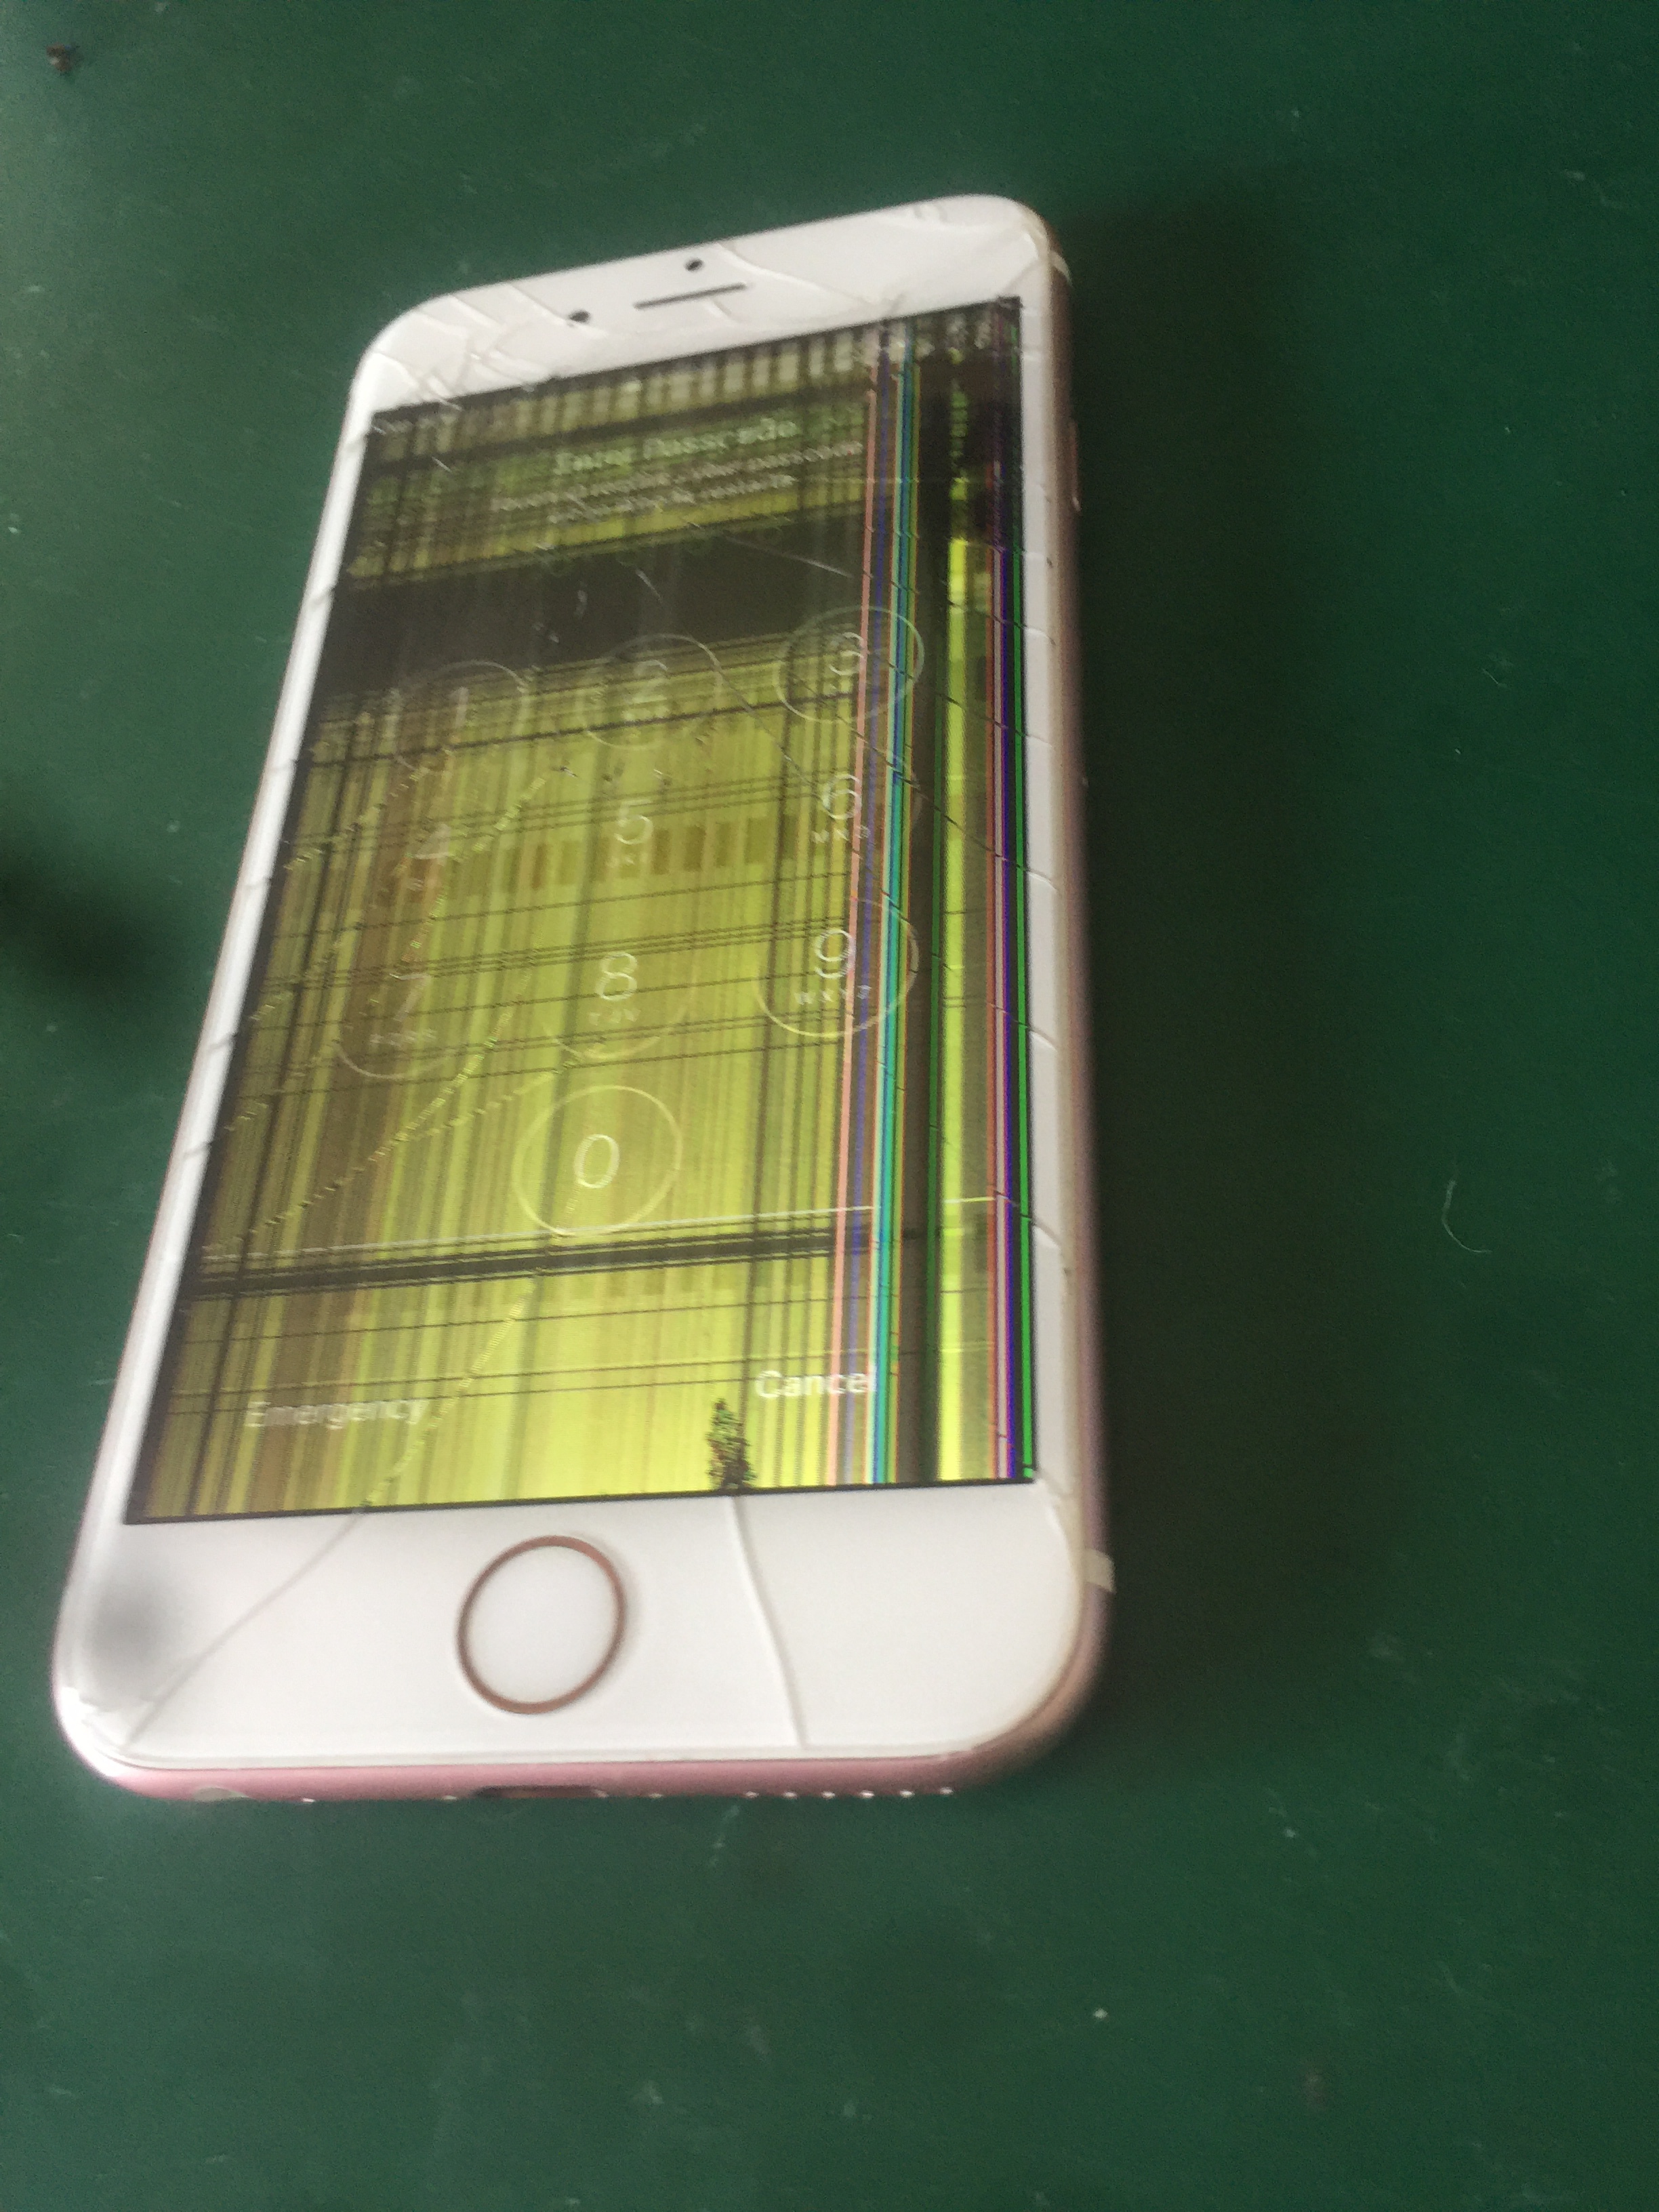 iPhone 6s Before Repair